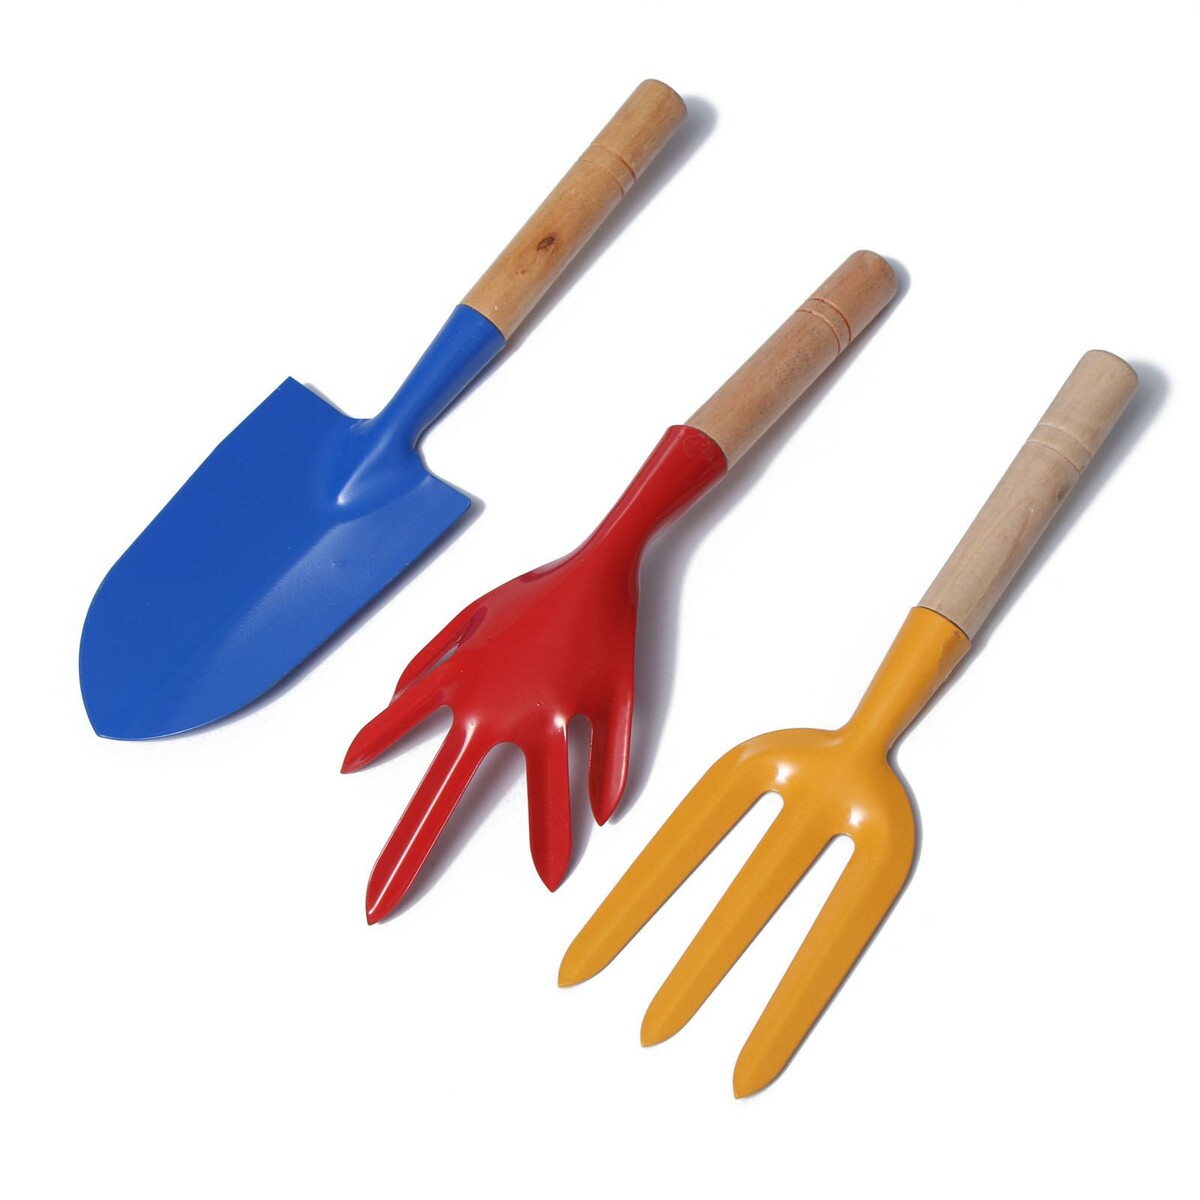 Набор садового инструмента, 3 предмета: совок, рыхлитель, вилка, длина 28 см, деревянные ручки набор для песочницы совок и грабли с отверстием а микс 5 набор